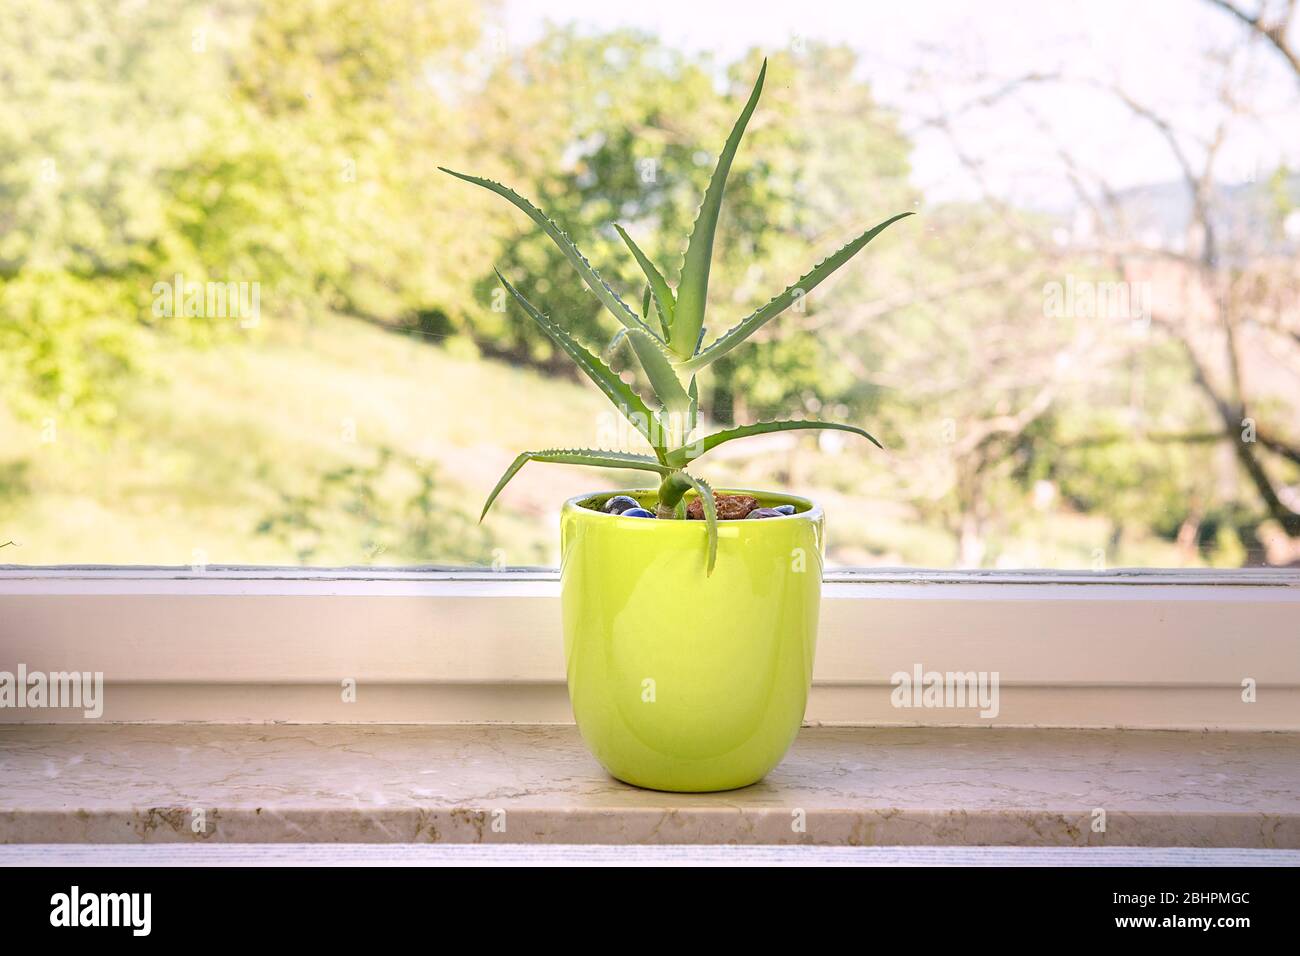 Usine de vera d'aloès dans le pot de fleurs sur le seuil de la fenêtre. Intérieur avec usine maison dans un pot vert. Une plante succulente à la maison. Banque D'Images